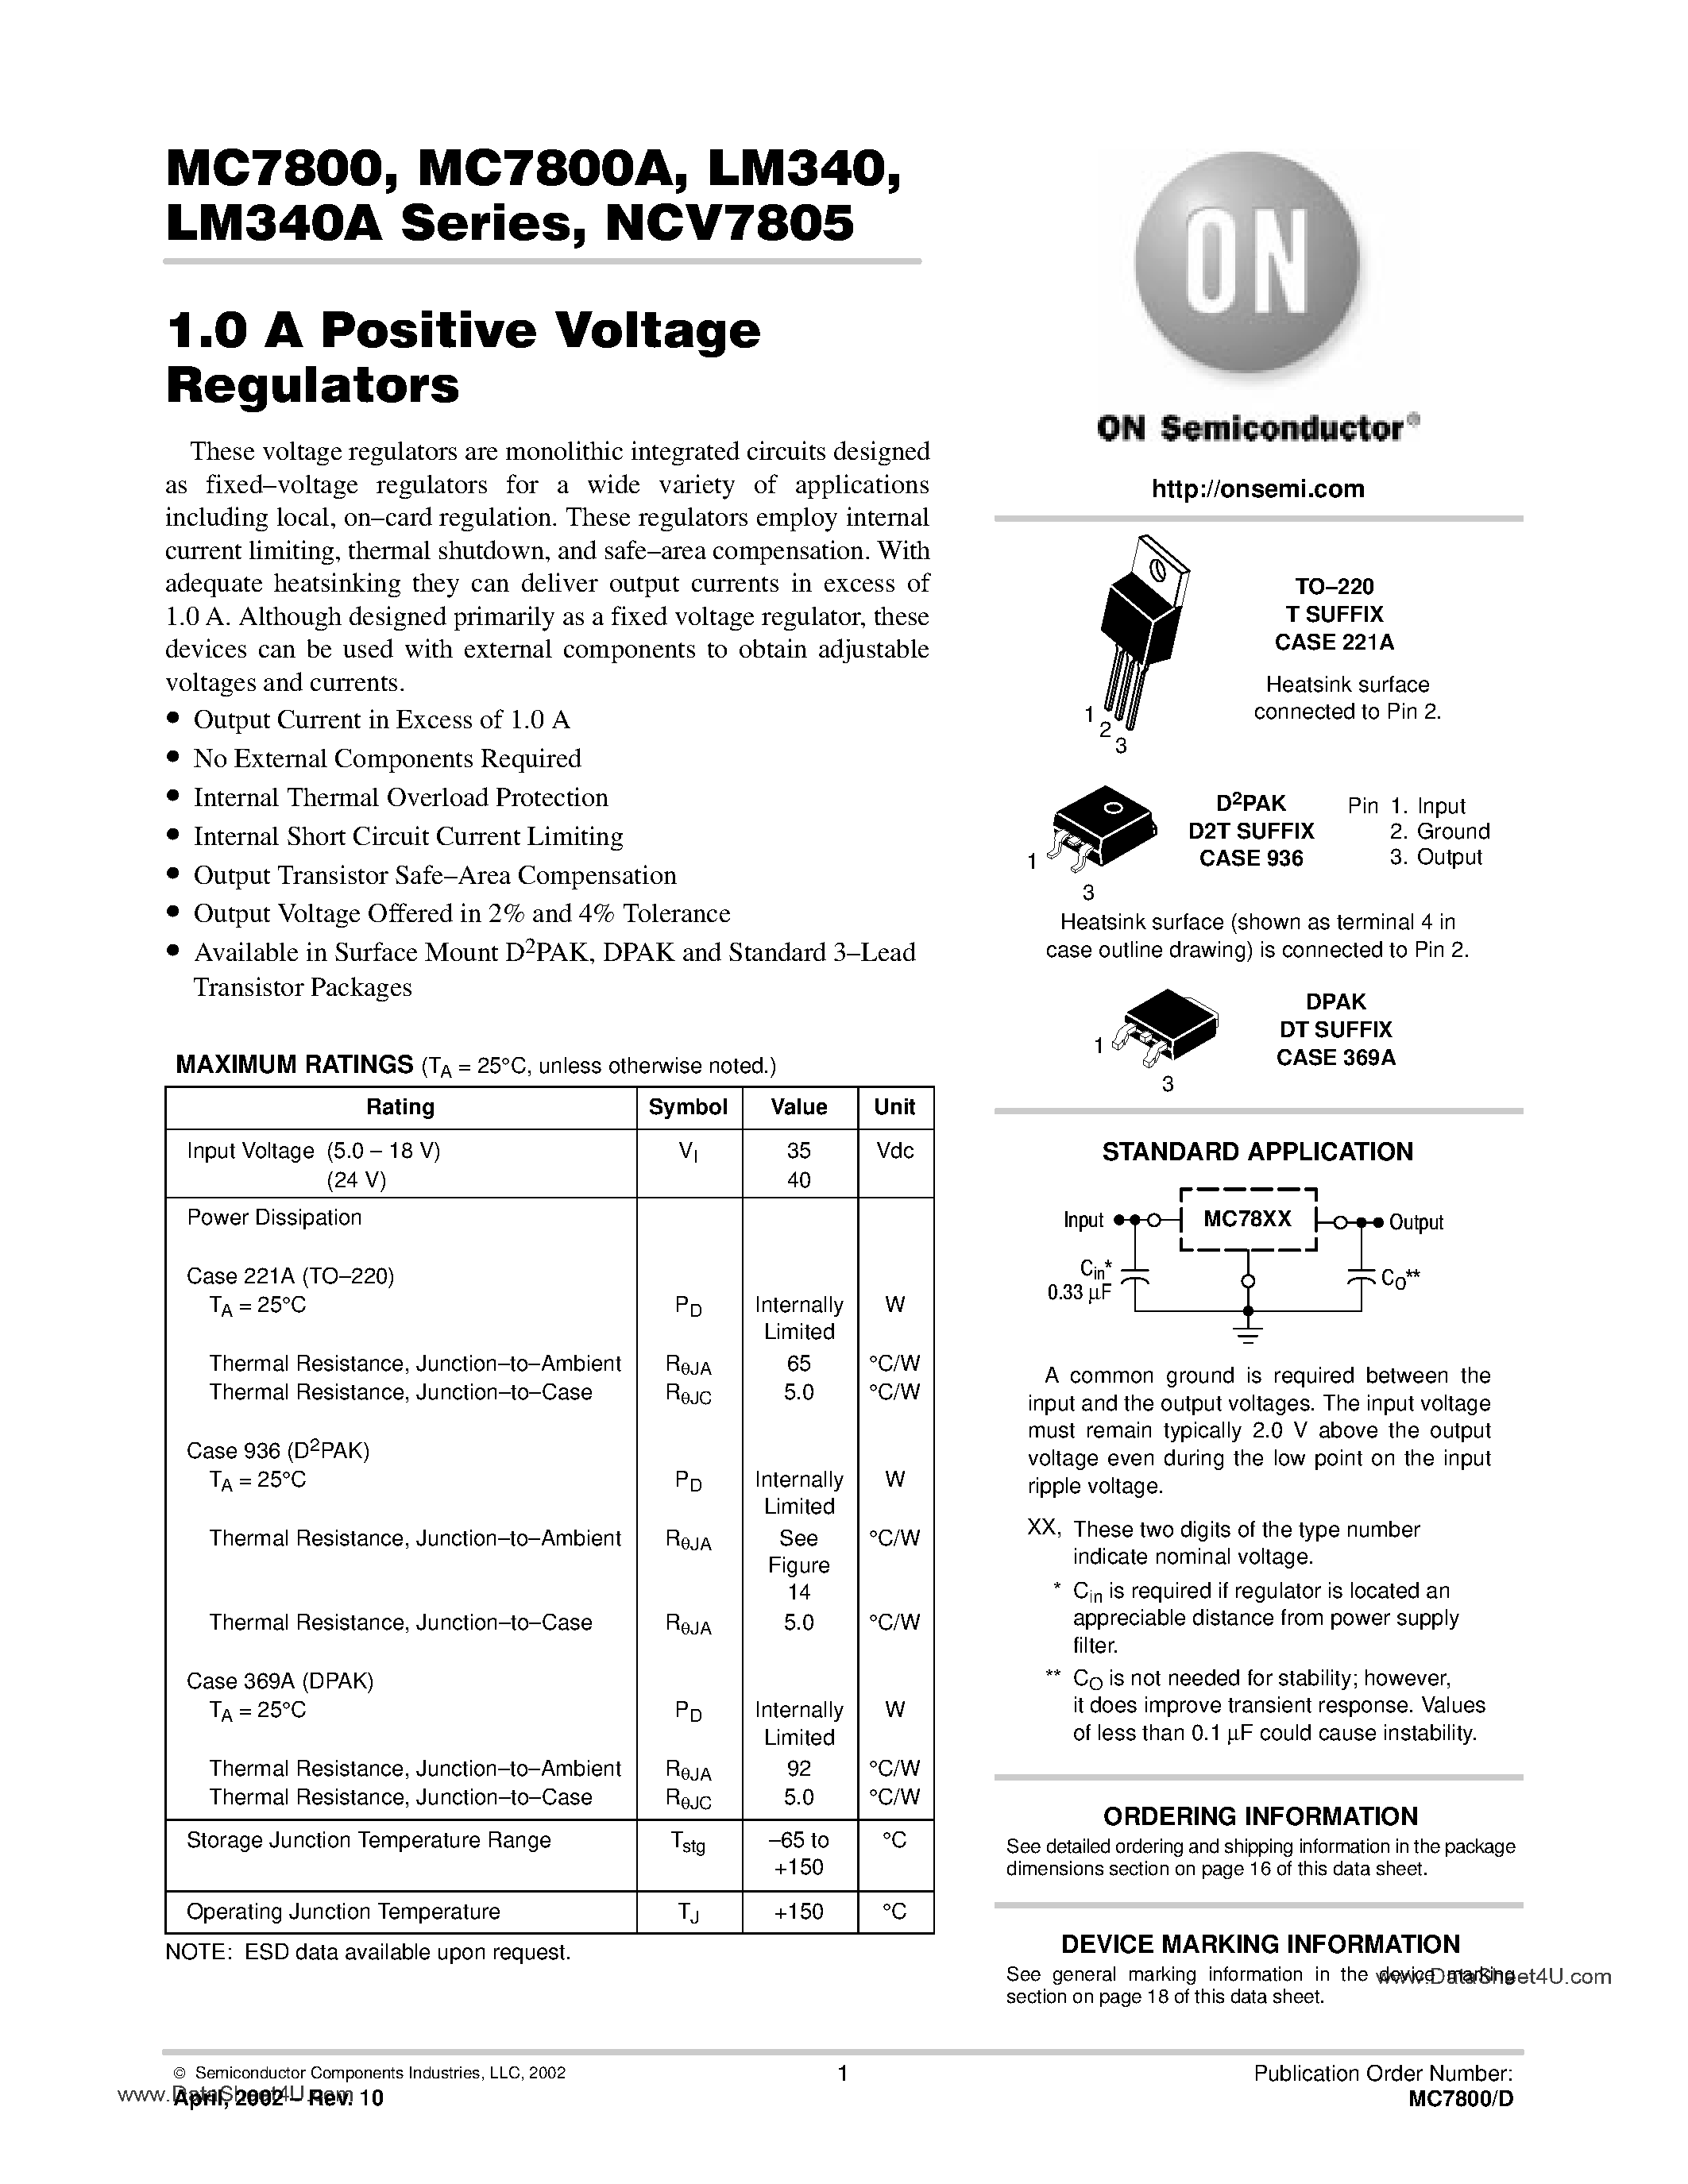 Даташит MC7808CT - (MC7800x Series) 1A Positive Voltage Regulator страница 1